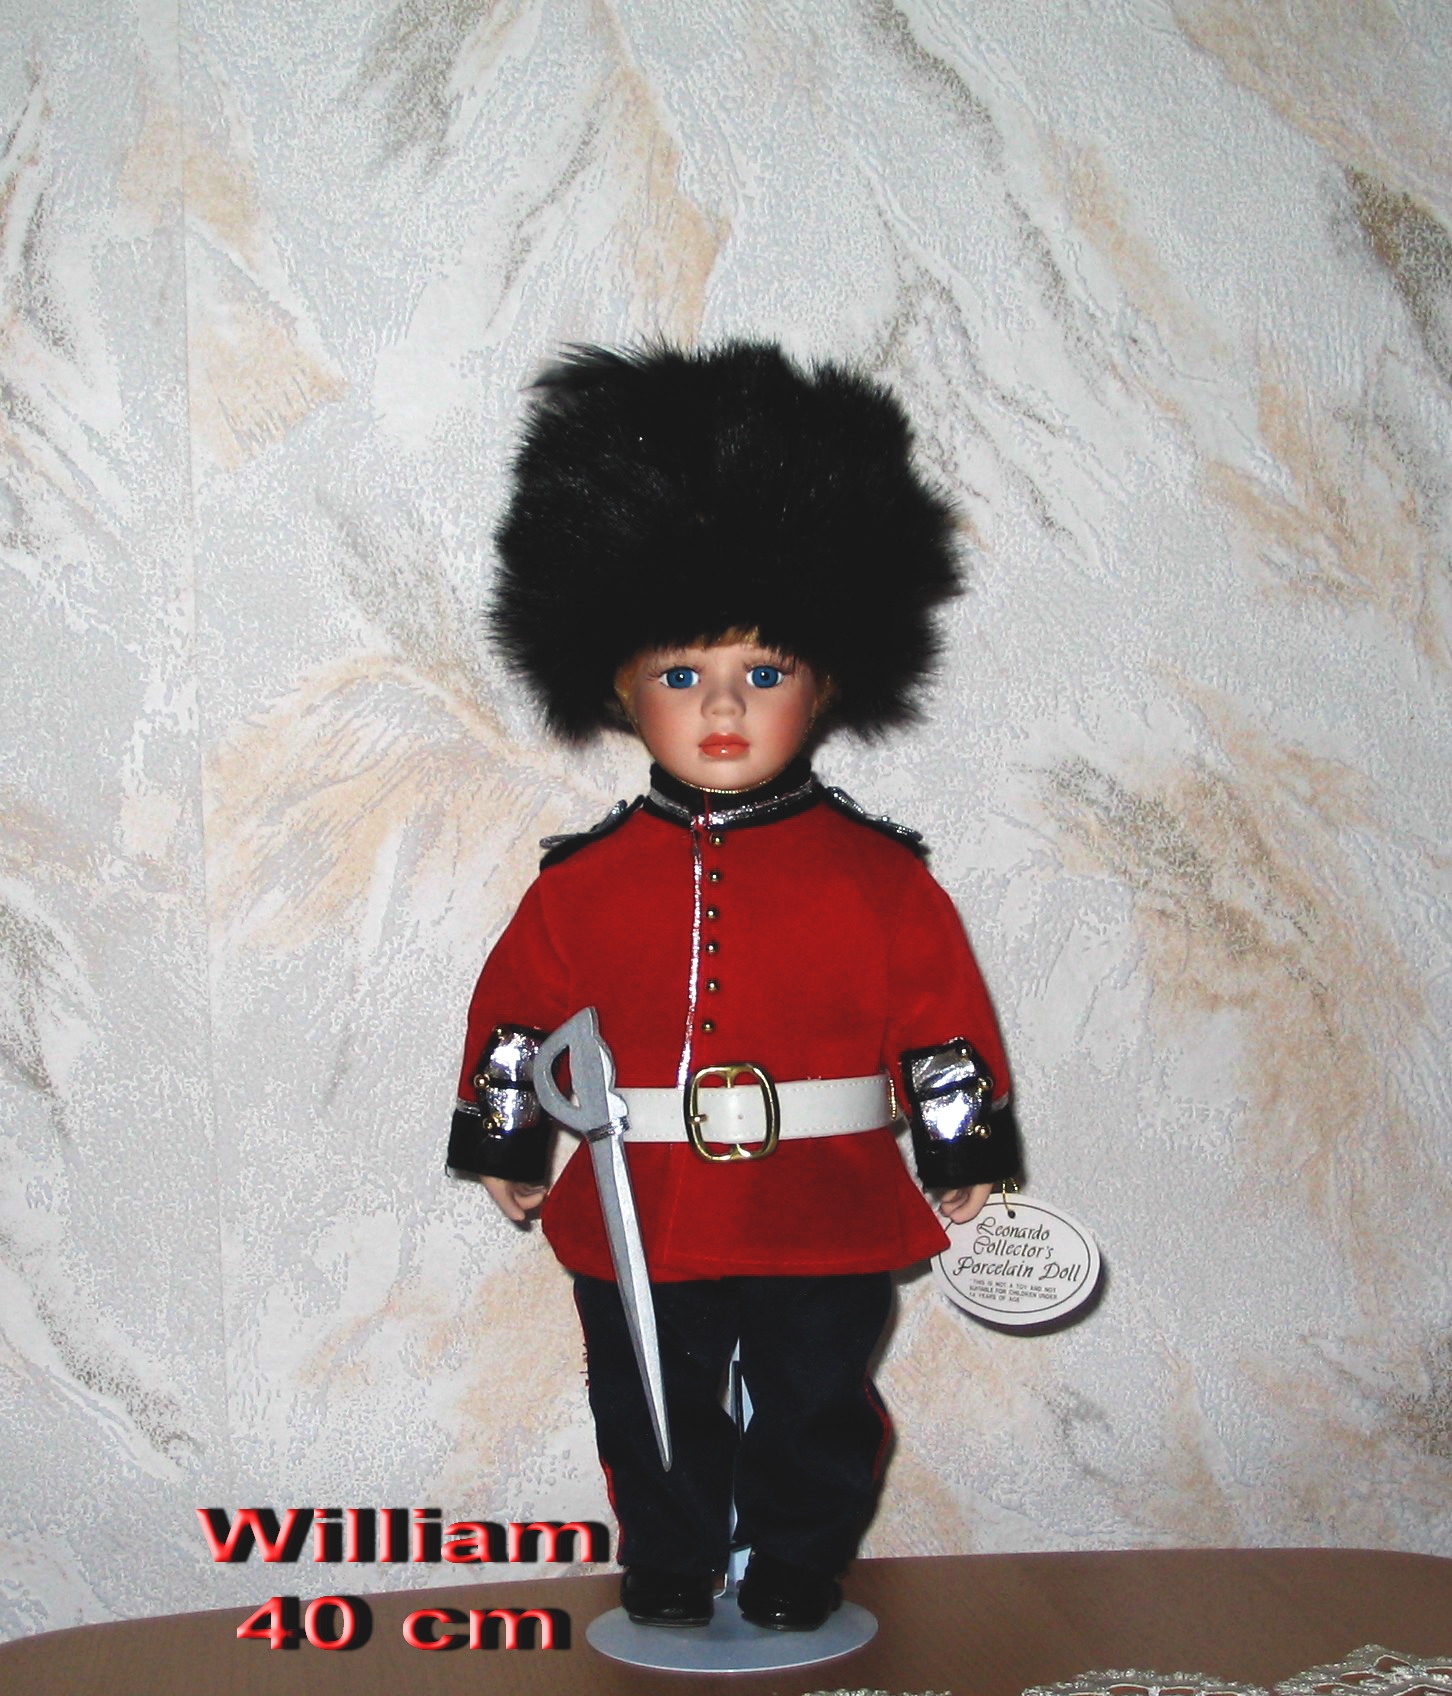 William 54